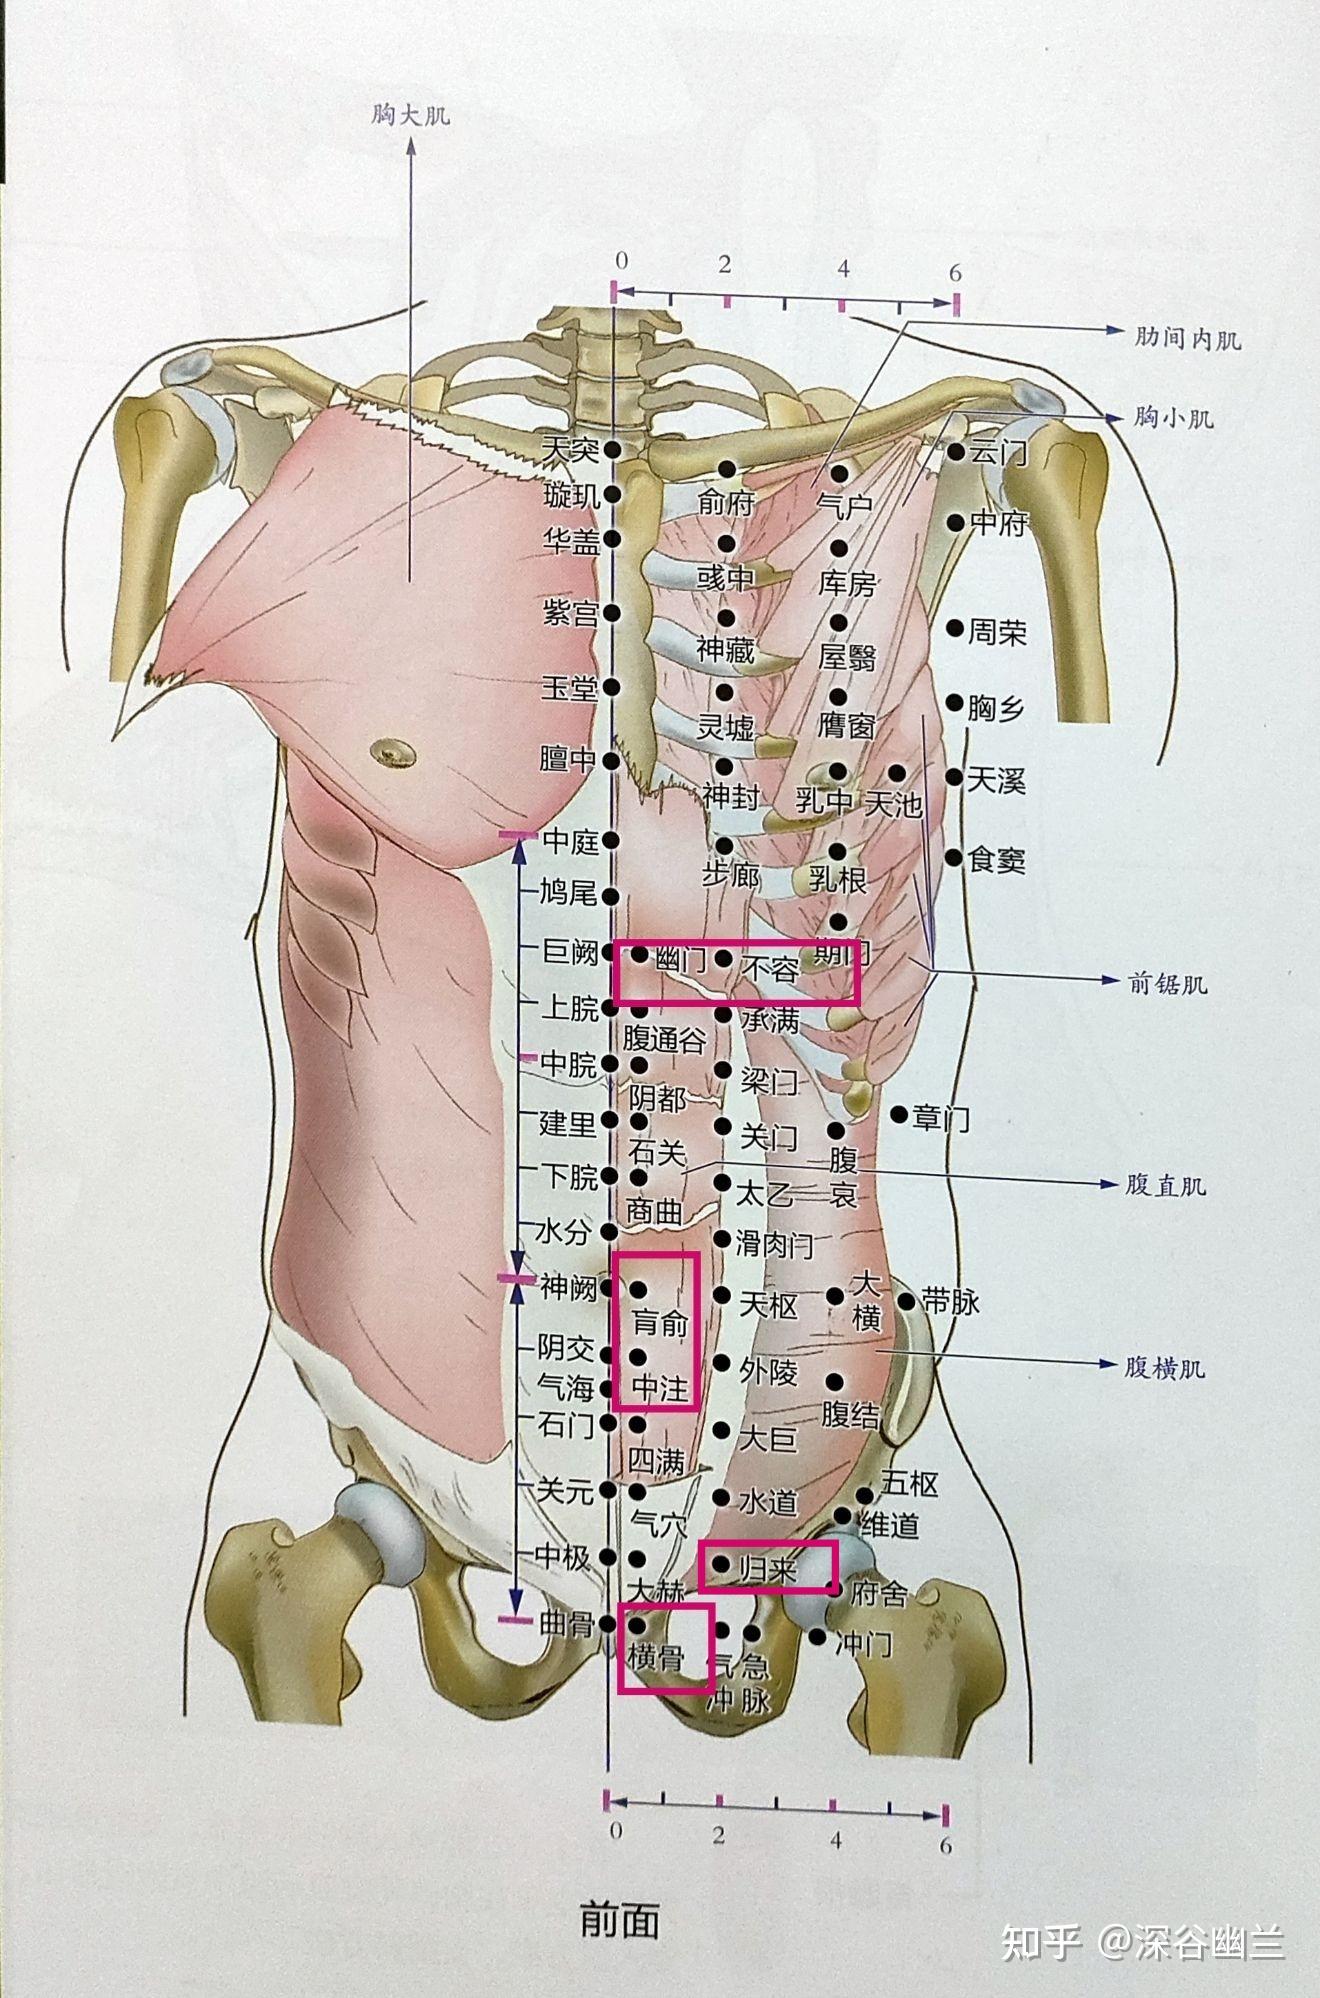 肓俞穴是腹直肌脐下外侧的激痛点及其牵涉痛的位置,该点常造成该处的